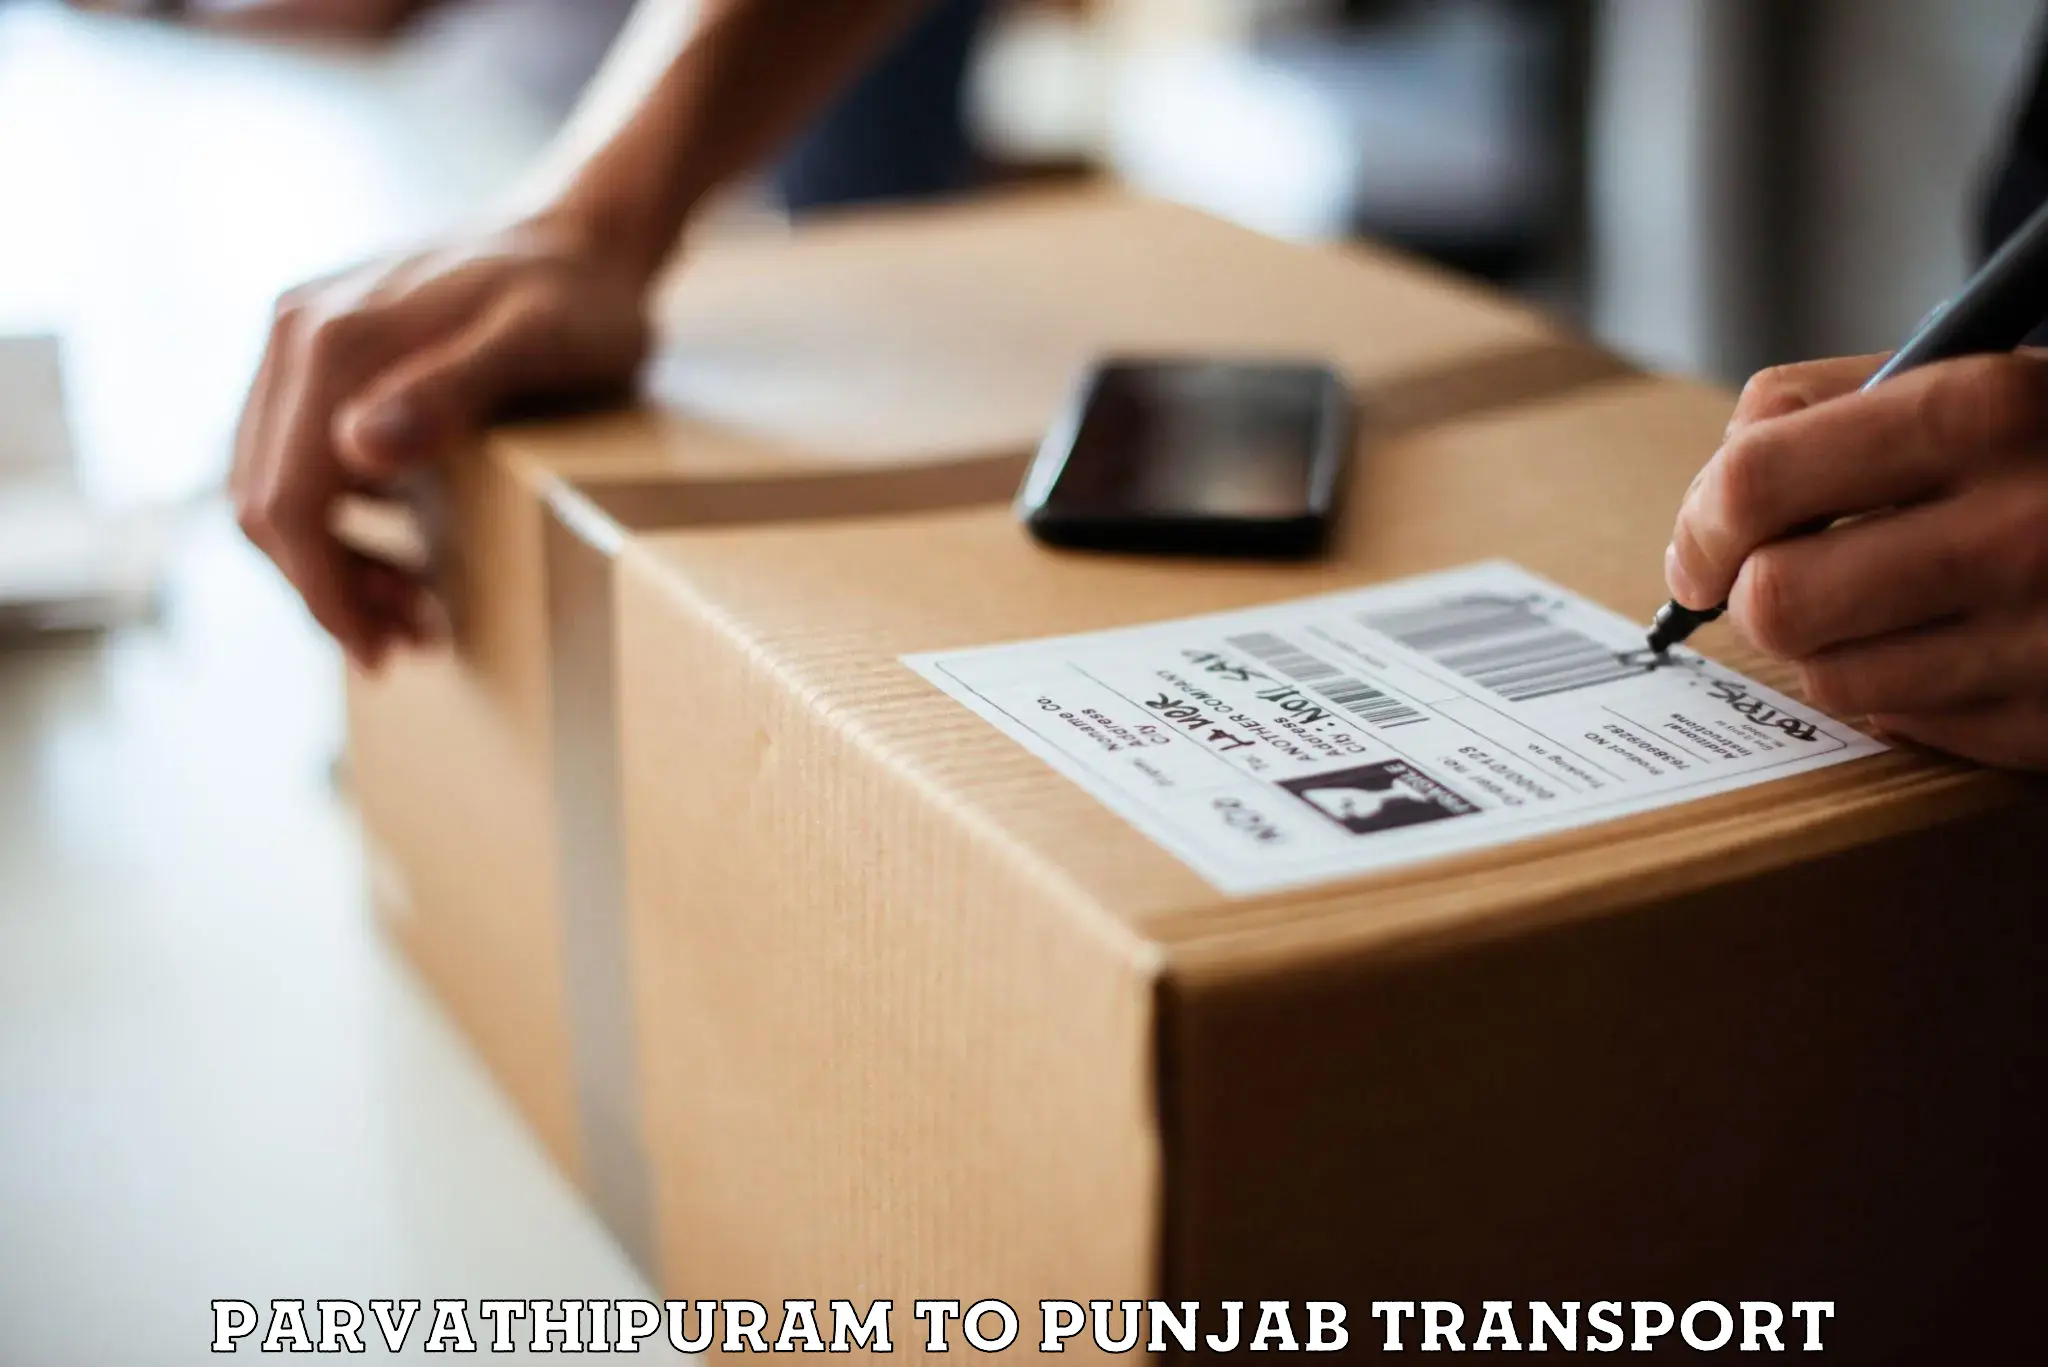 Online transport service Parvathipuram to Punjab